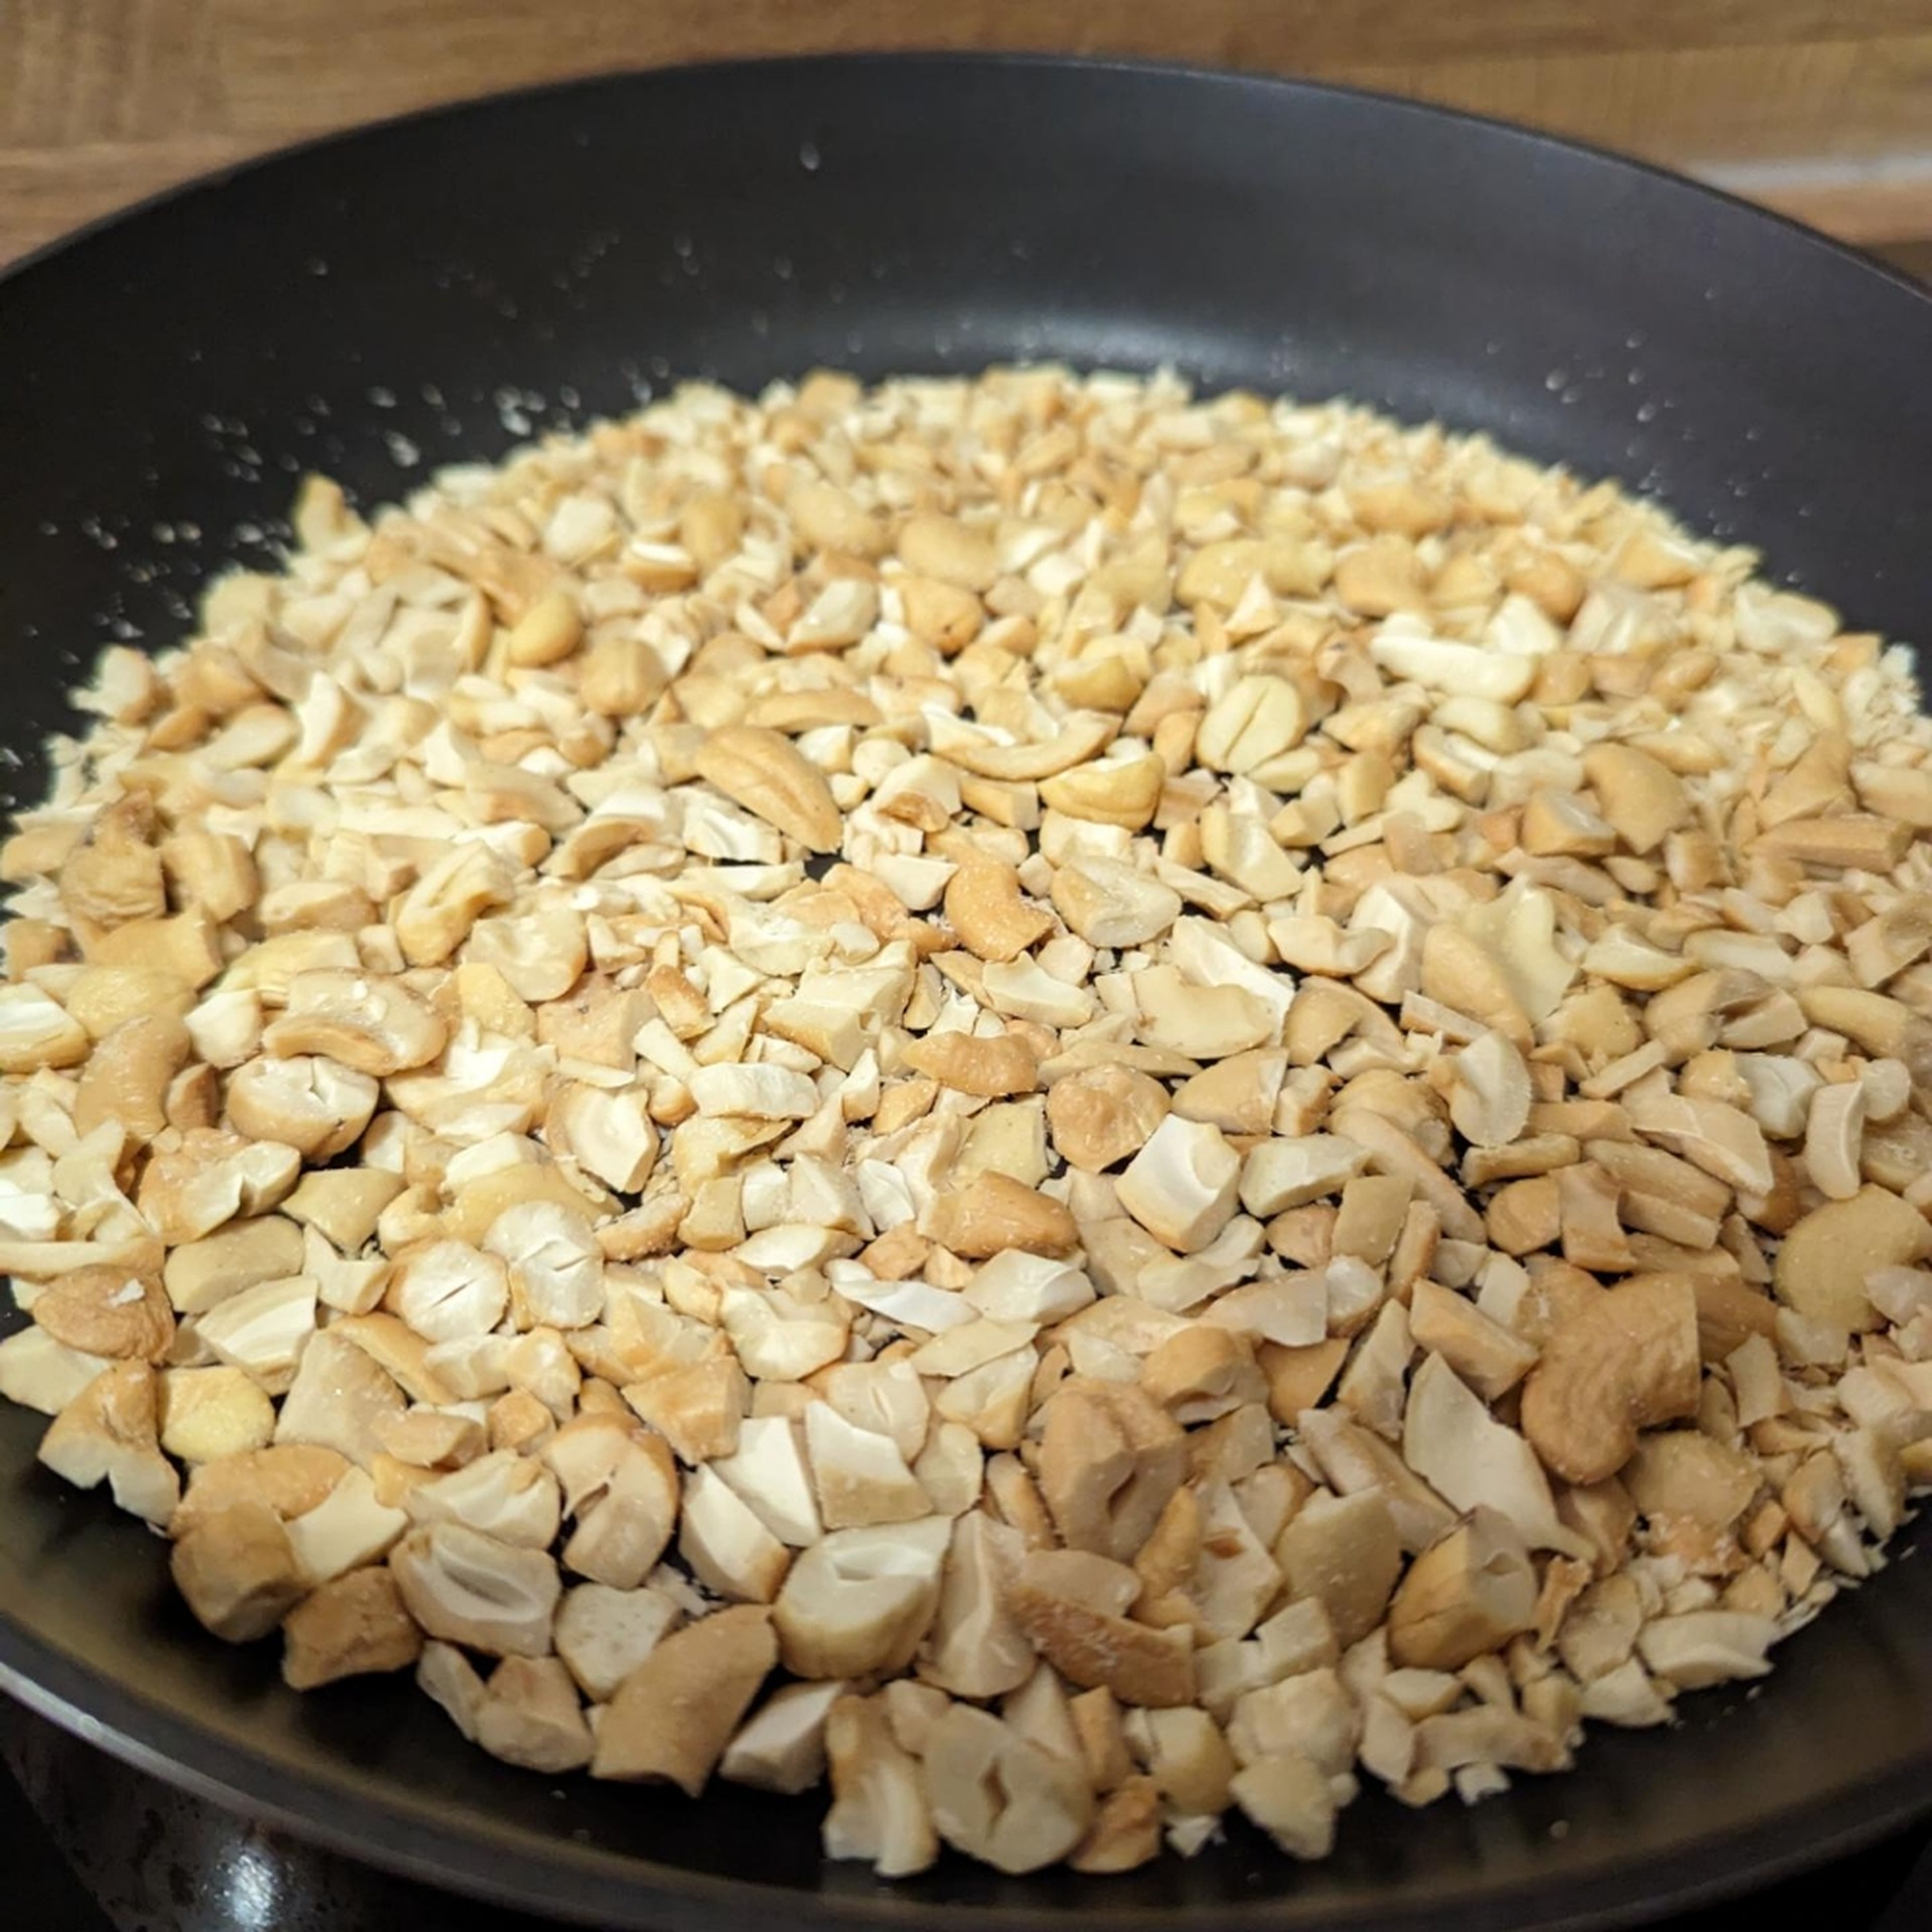 Reis nach Packungsanleitung kochen. Cashewkerne grob hacken und 1-2 Minuten bei mittlerer Hitze anrösten, zur Seite stellen. Sesam 30 Sekunden bei mittlerer Hitze anrösten, bis er leicht braun ist, ebenfalls zur Seite stellen.